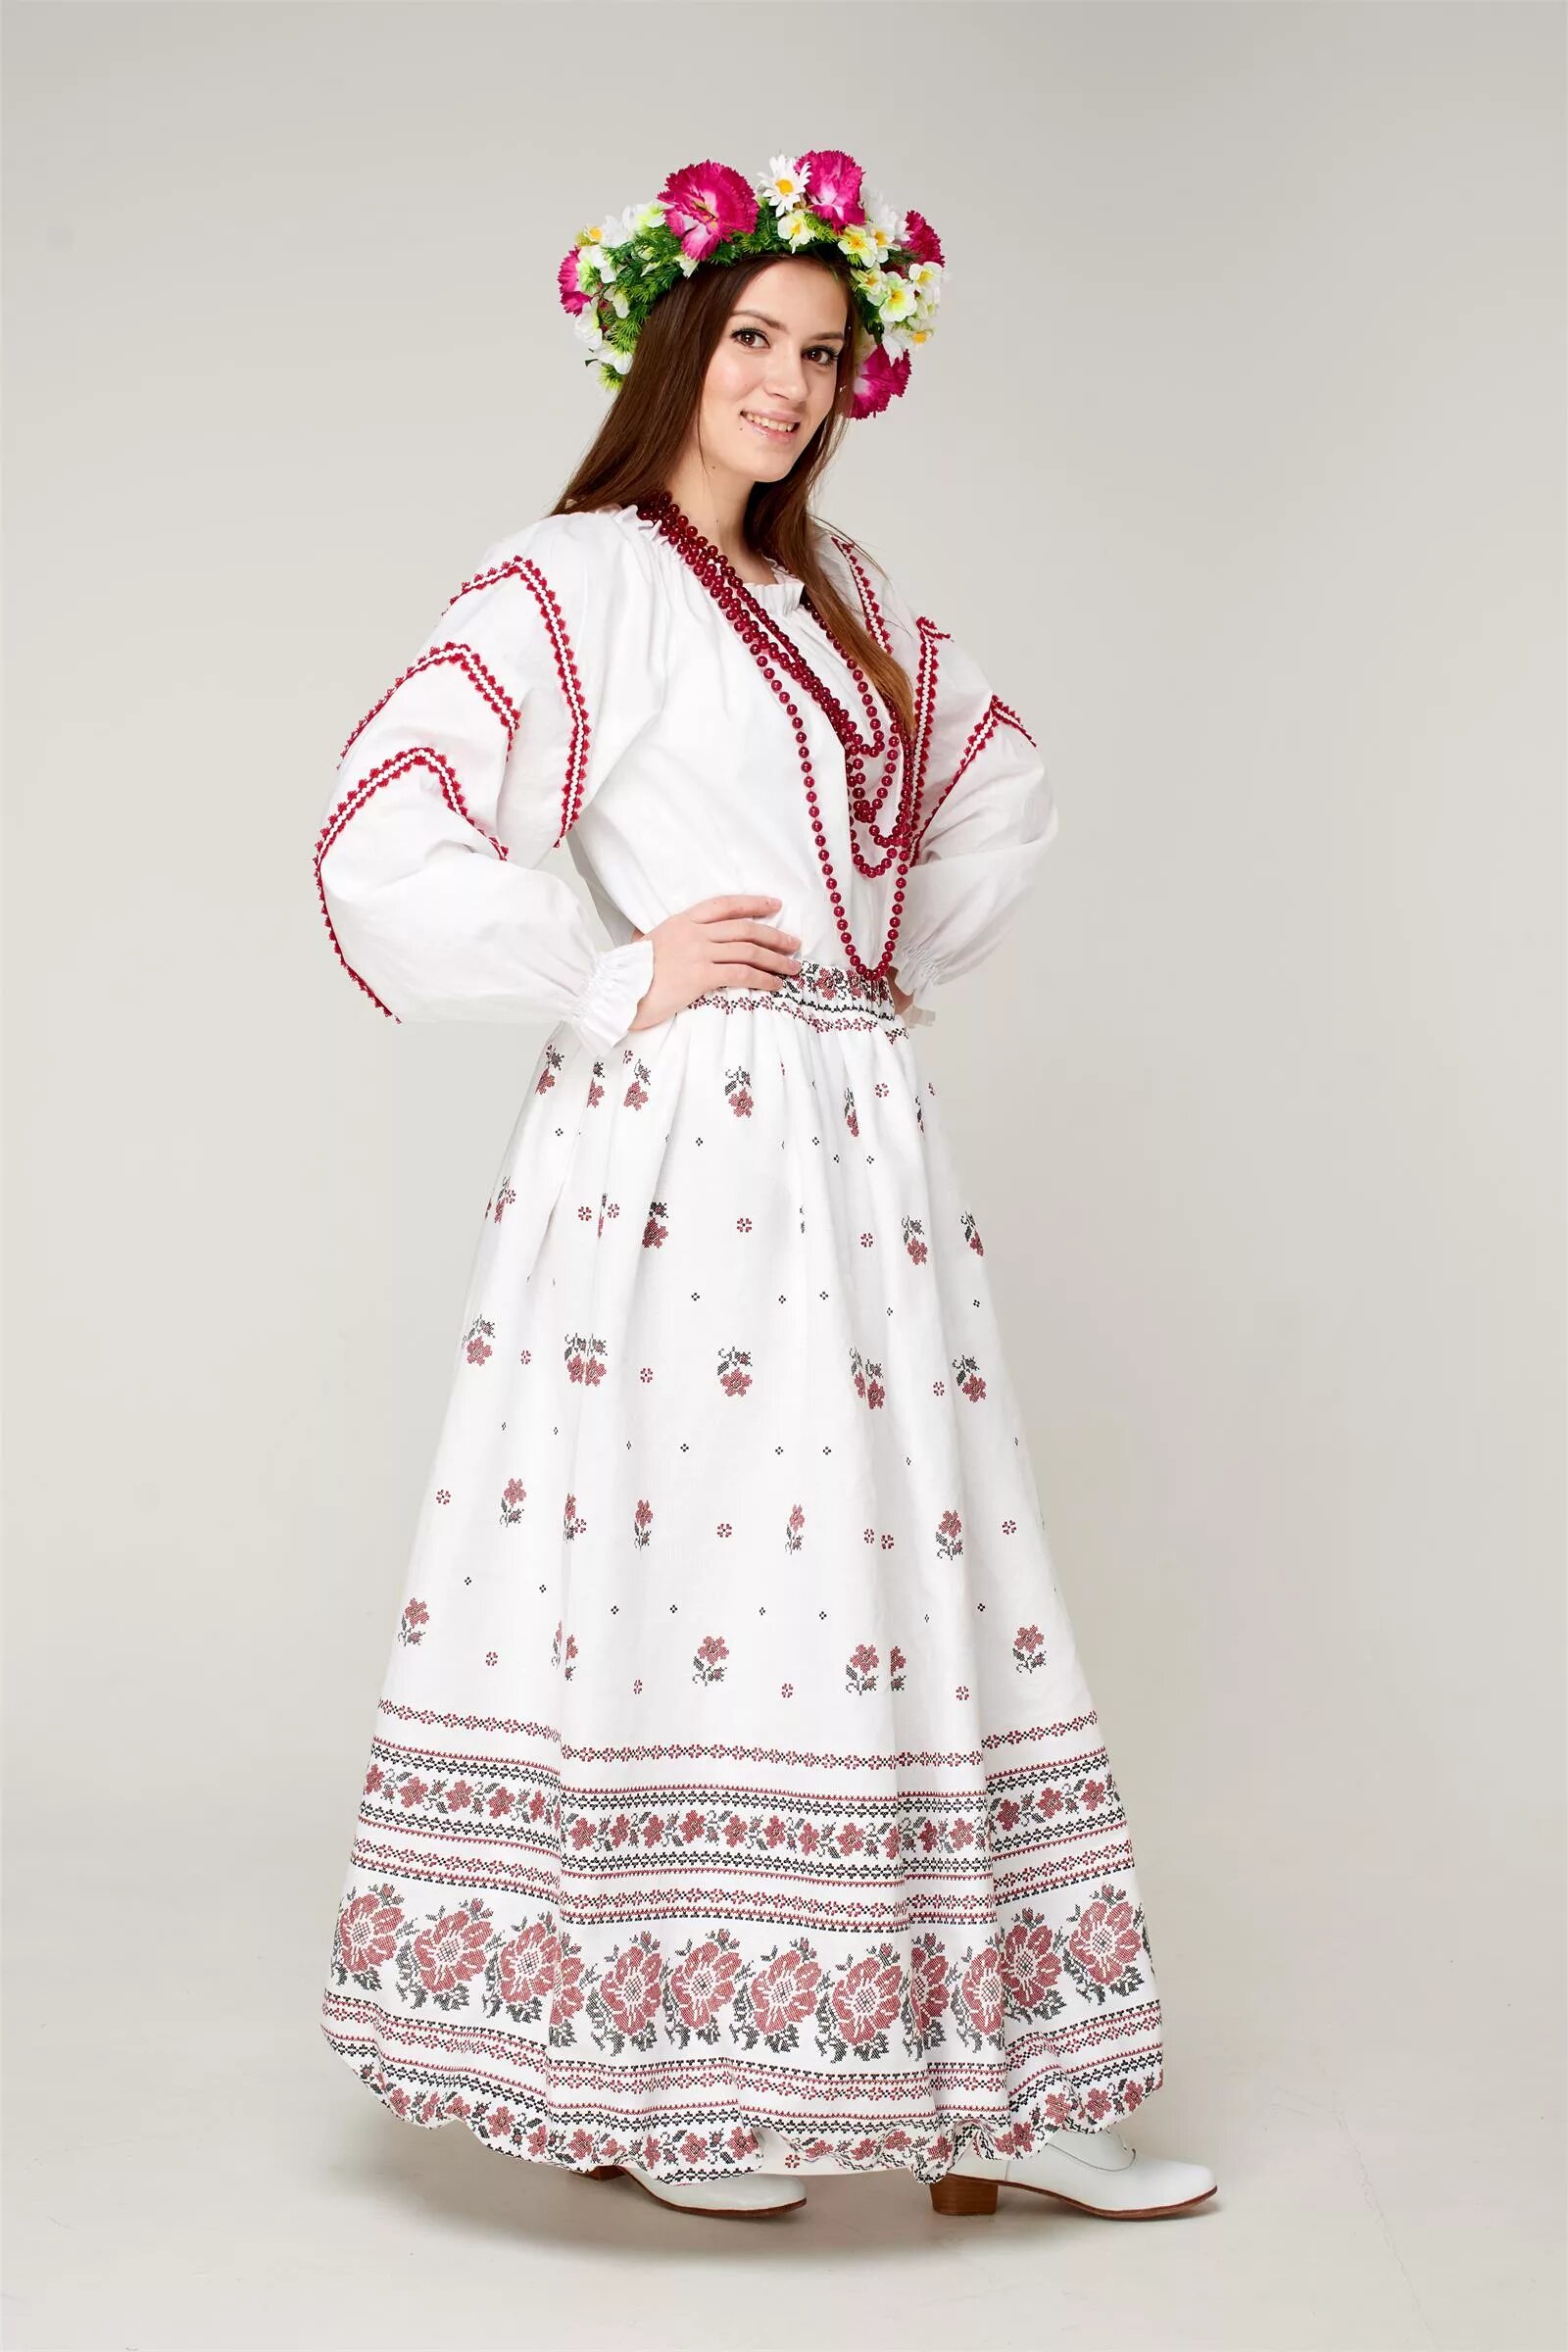 Русский костюм женский. Русское народное платье. Женский народный костюм. Традиционный русский костюм женский.